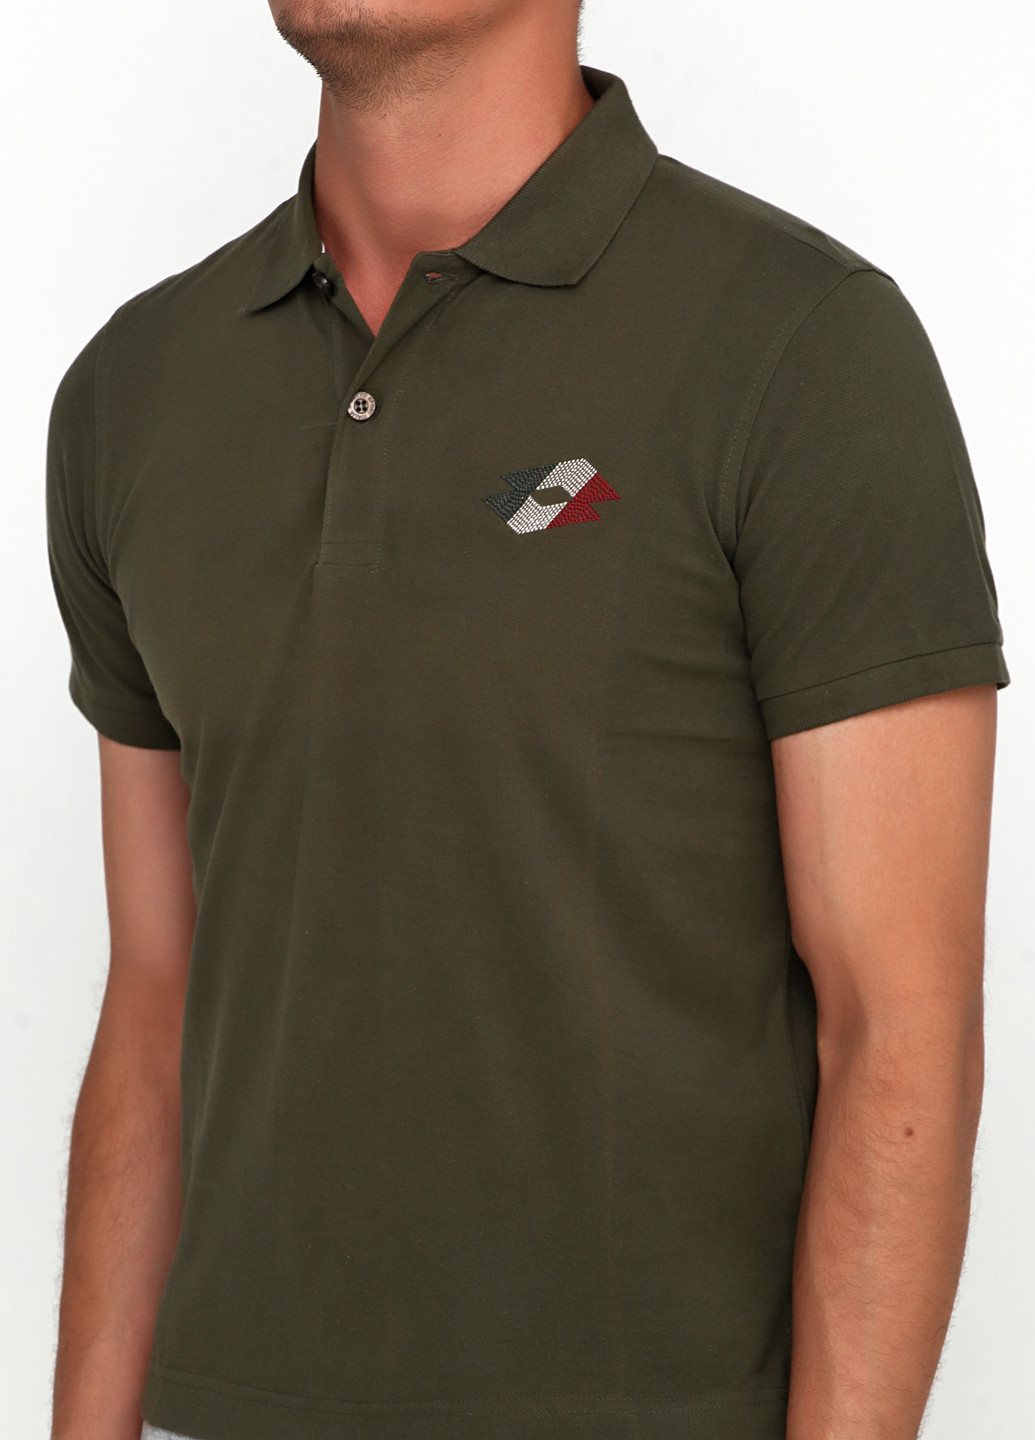 Темно-зеленая футболка-футболка для мужчин Lotto с логотипом